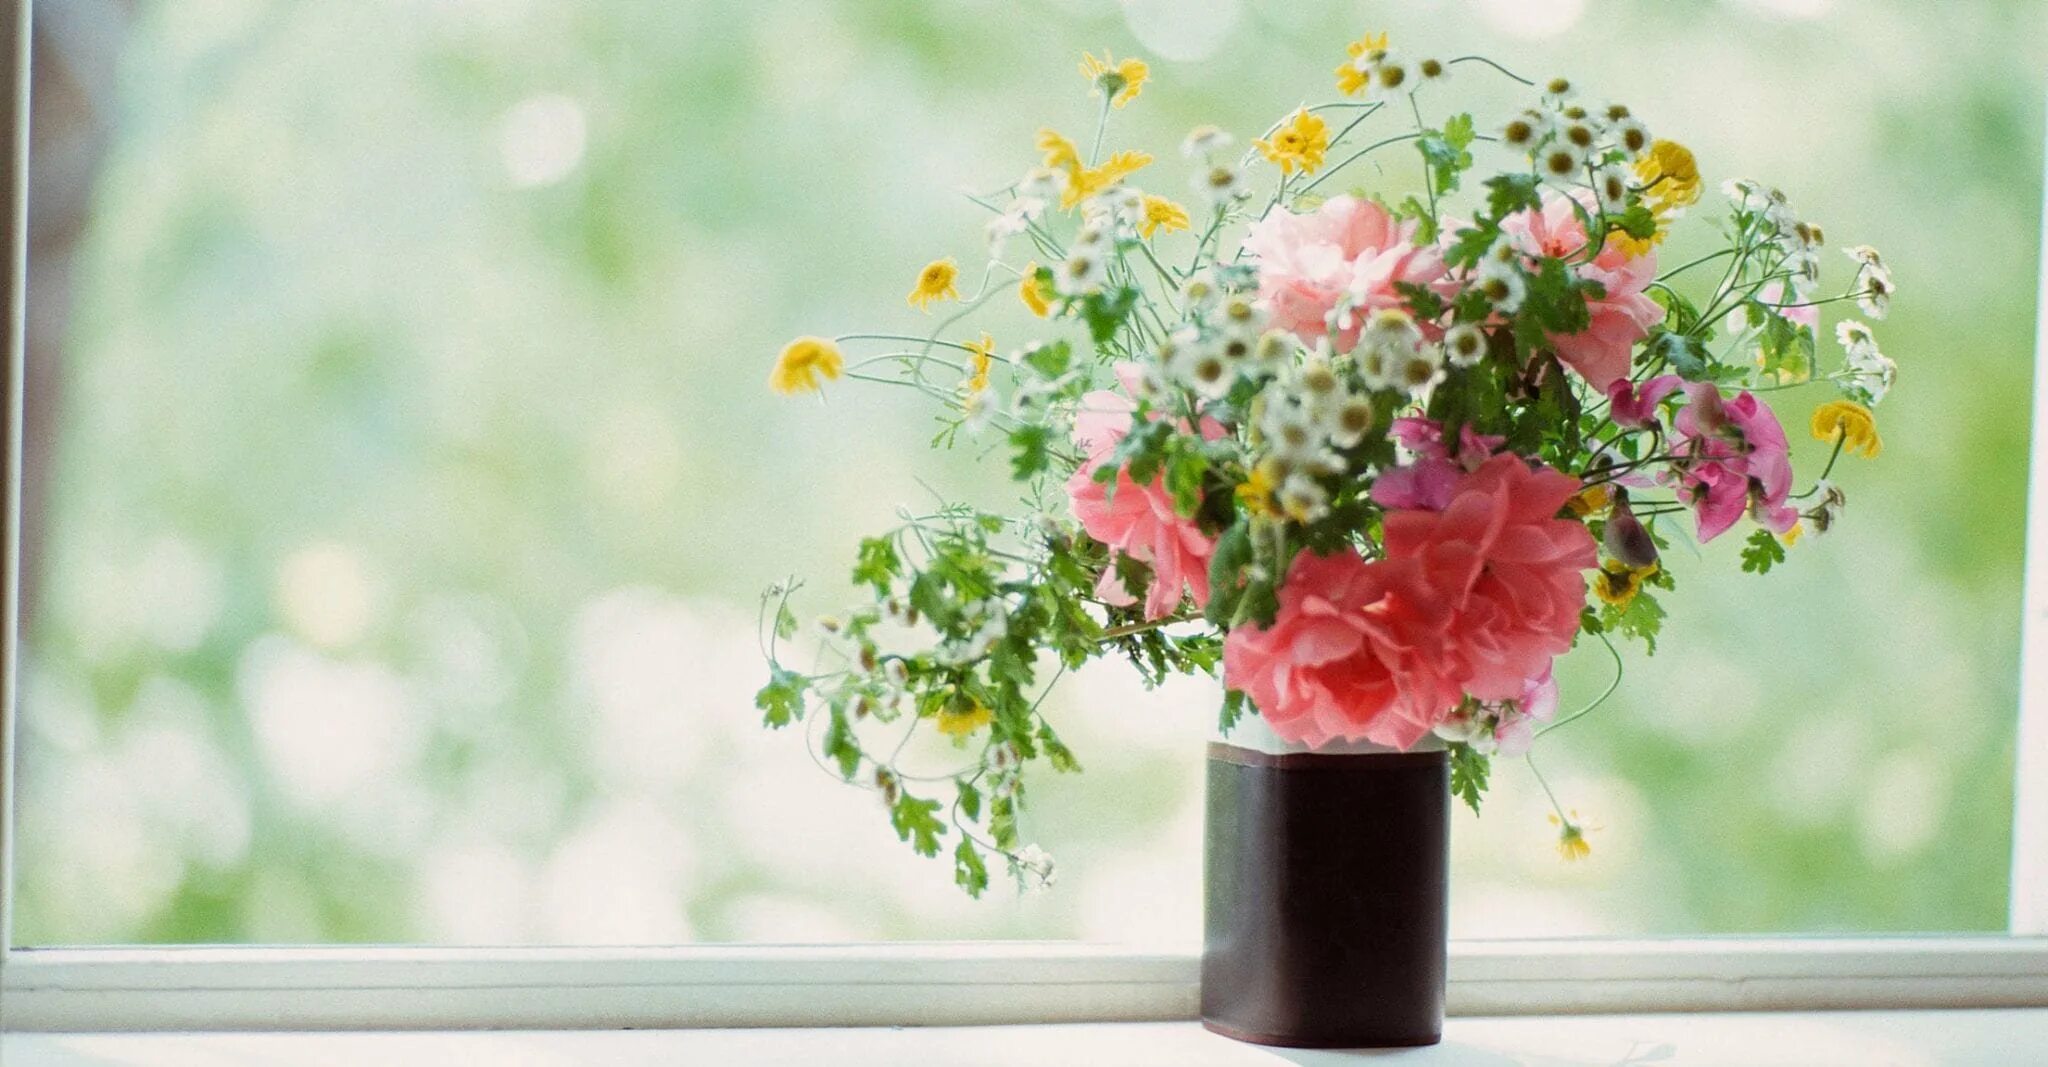 Цветы на подоконнике. Окно в цветах. Подоконник с цветами. Весенние цветы на окне. Подарить цветы в окно